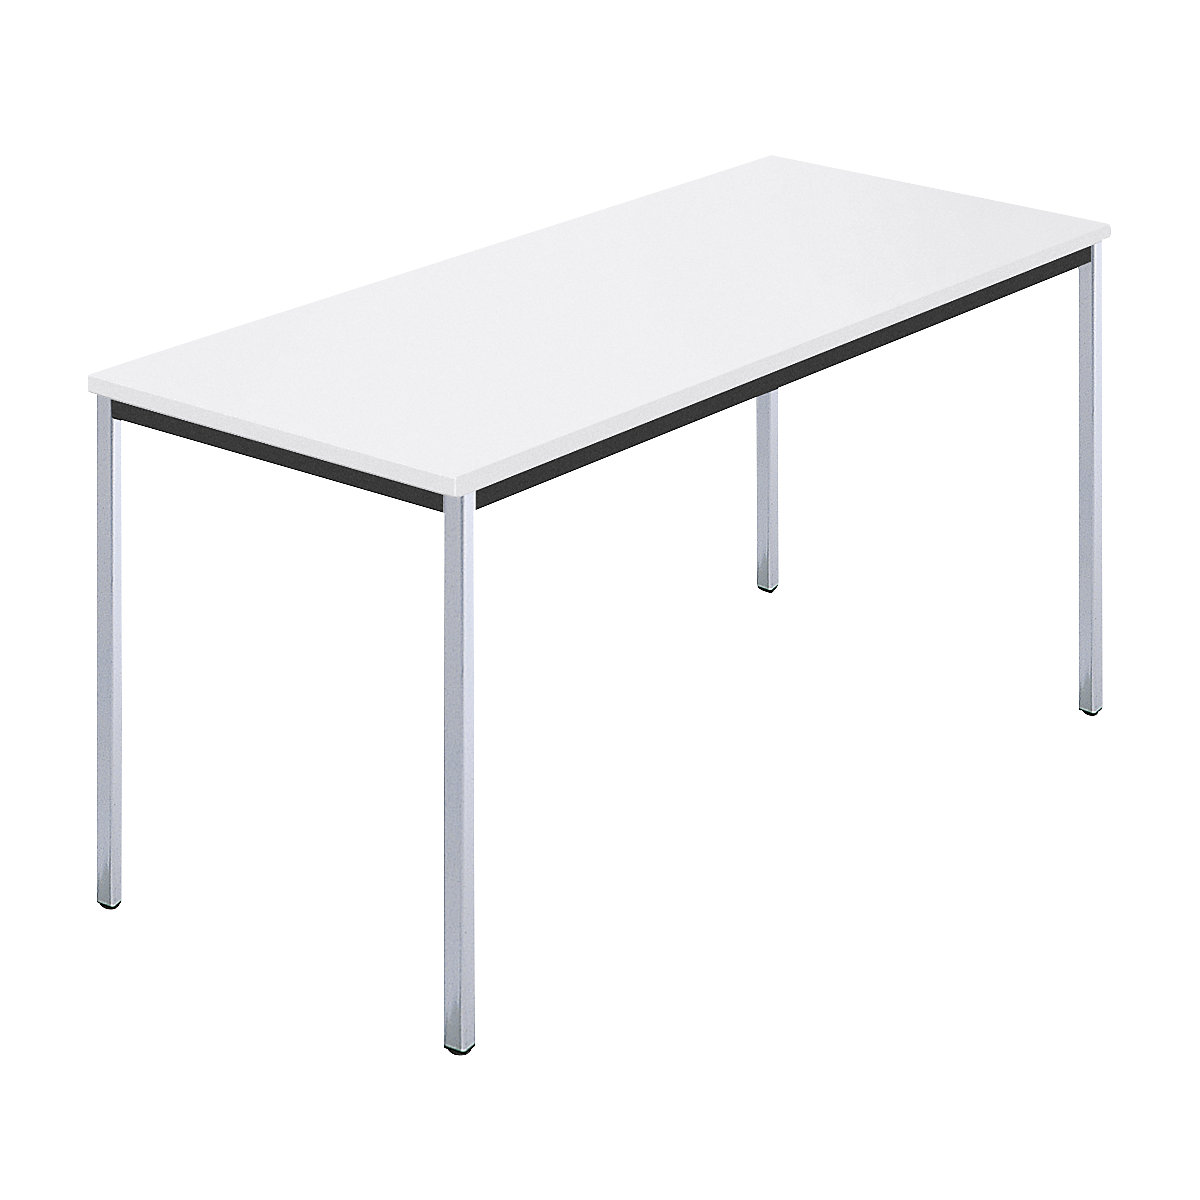 Pravokutni stol, kromirana četverokutna cijev, ŠxD 1400 x 700 mm, u bijeloj boji-6